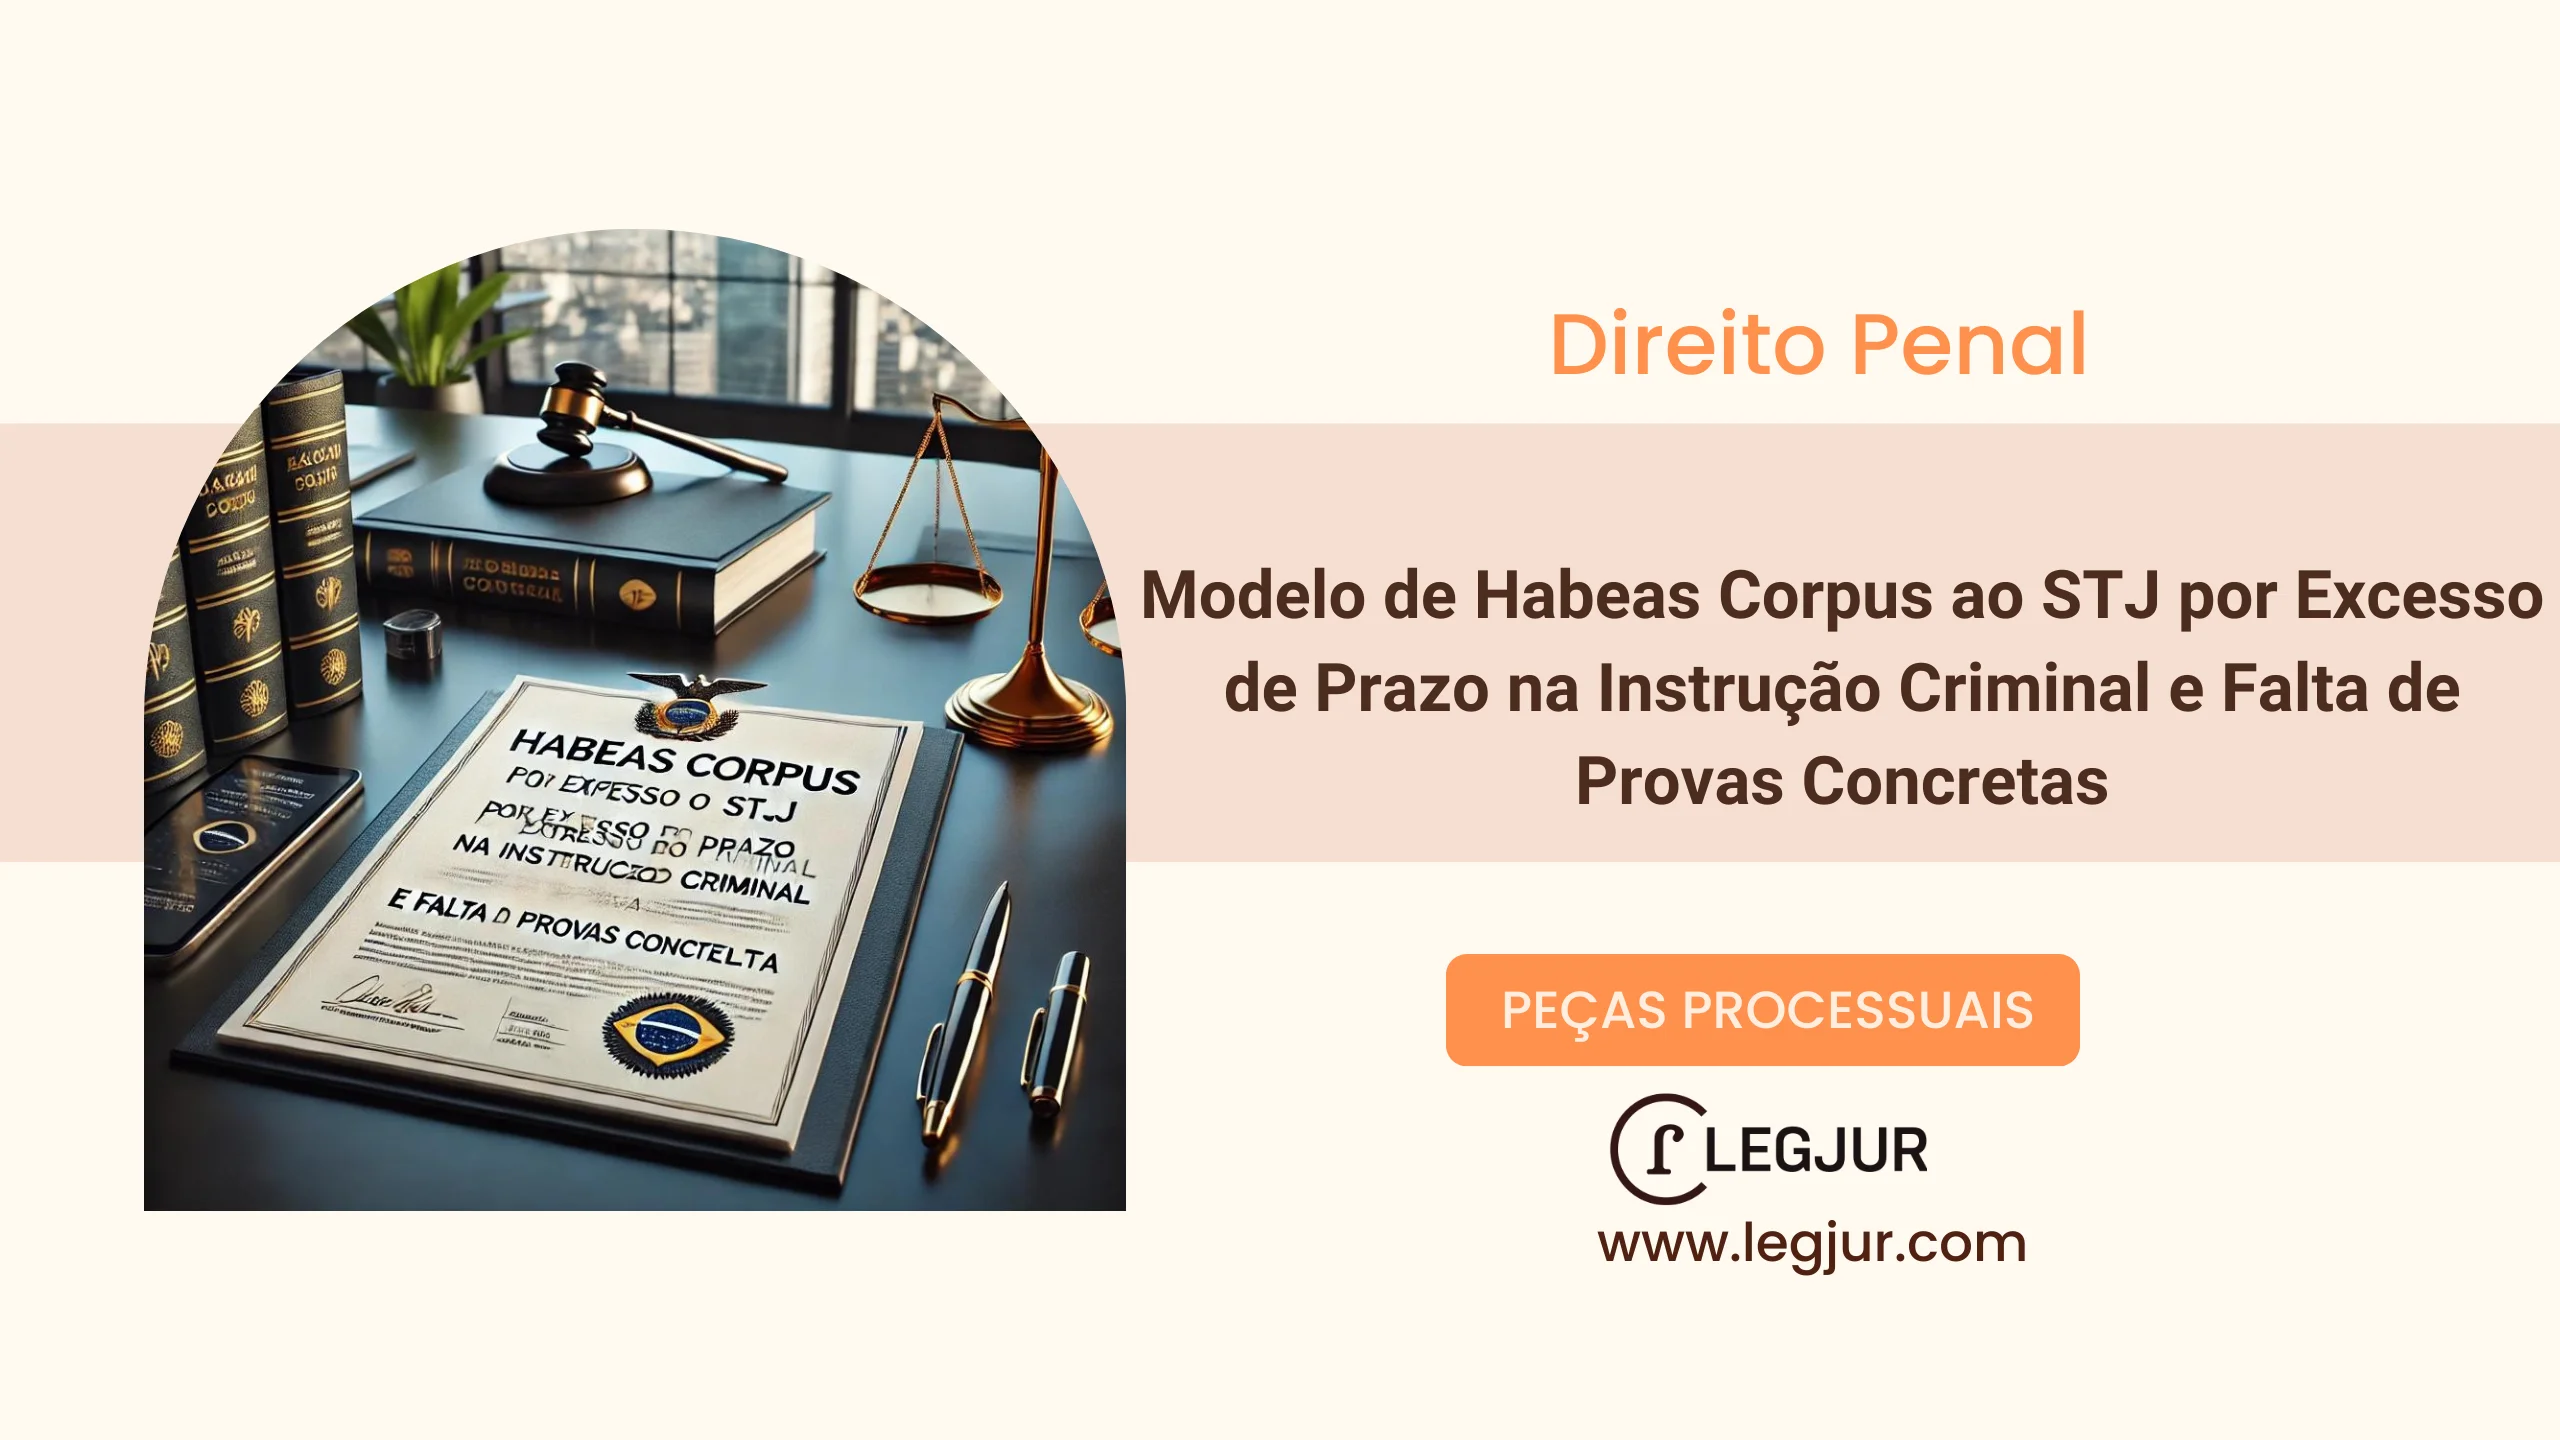 Modelo de Habeas Corpus ao STJ por Excesso de Prazo na Instrução Criminal e Falta de Provas Concretas